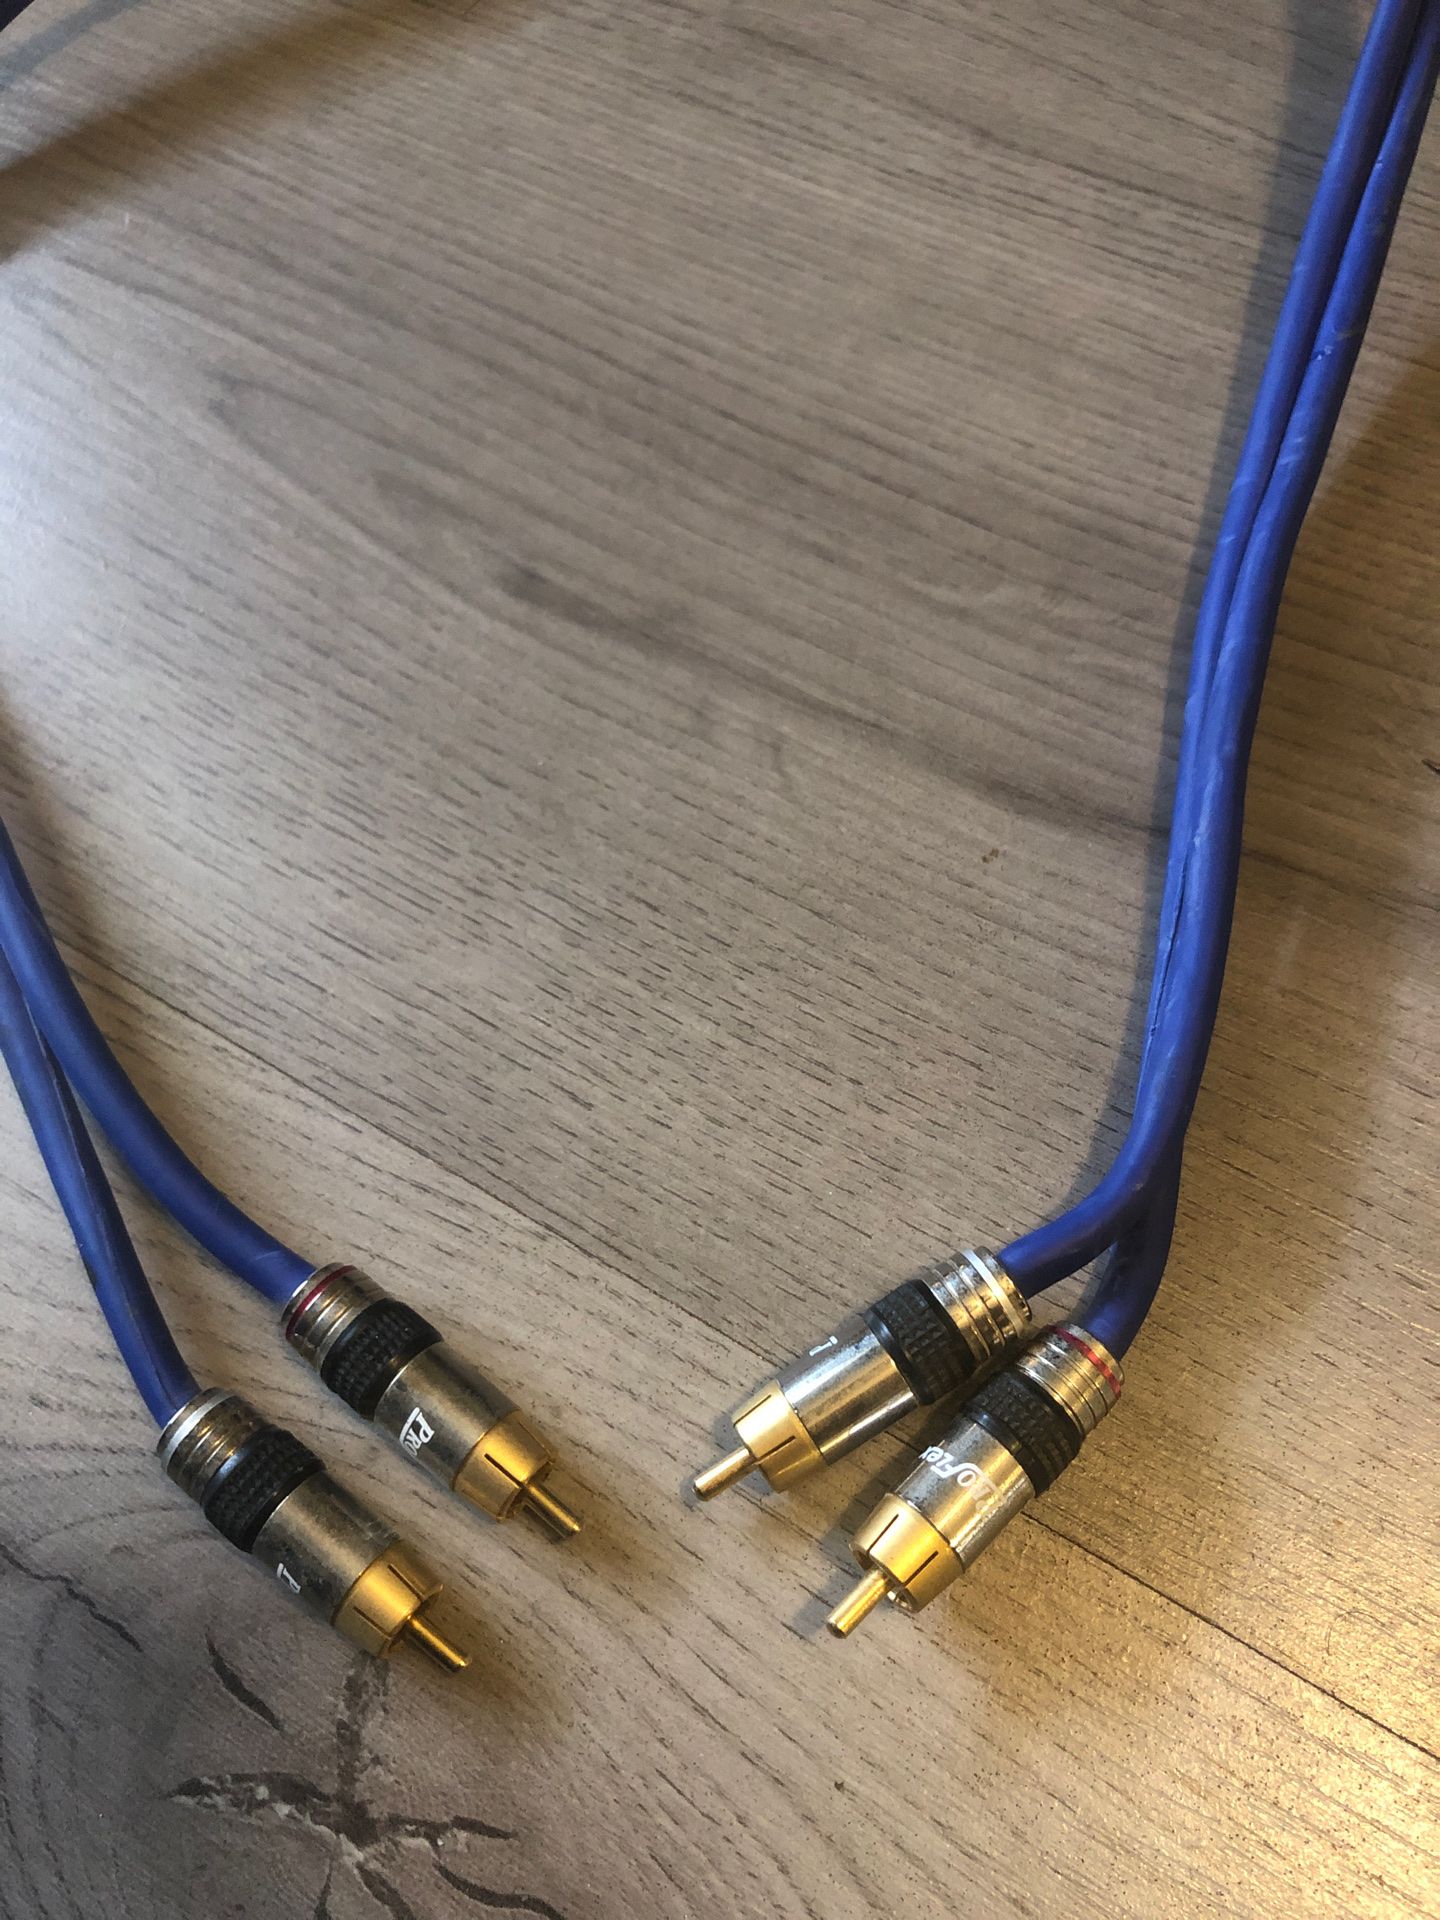 Pro flex audio interface cables